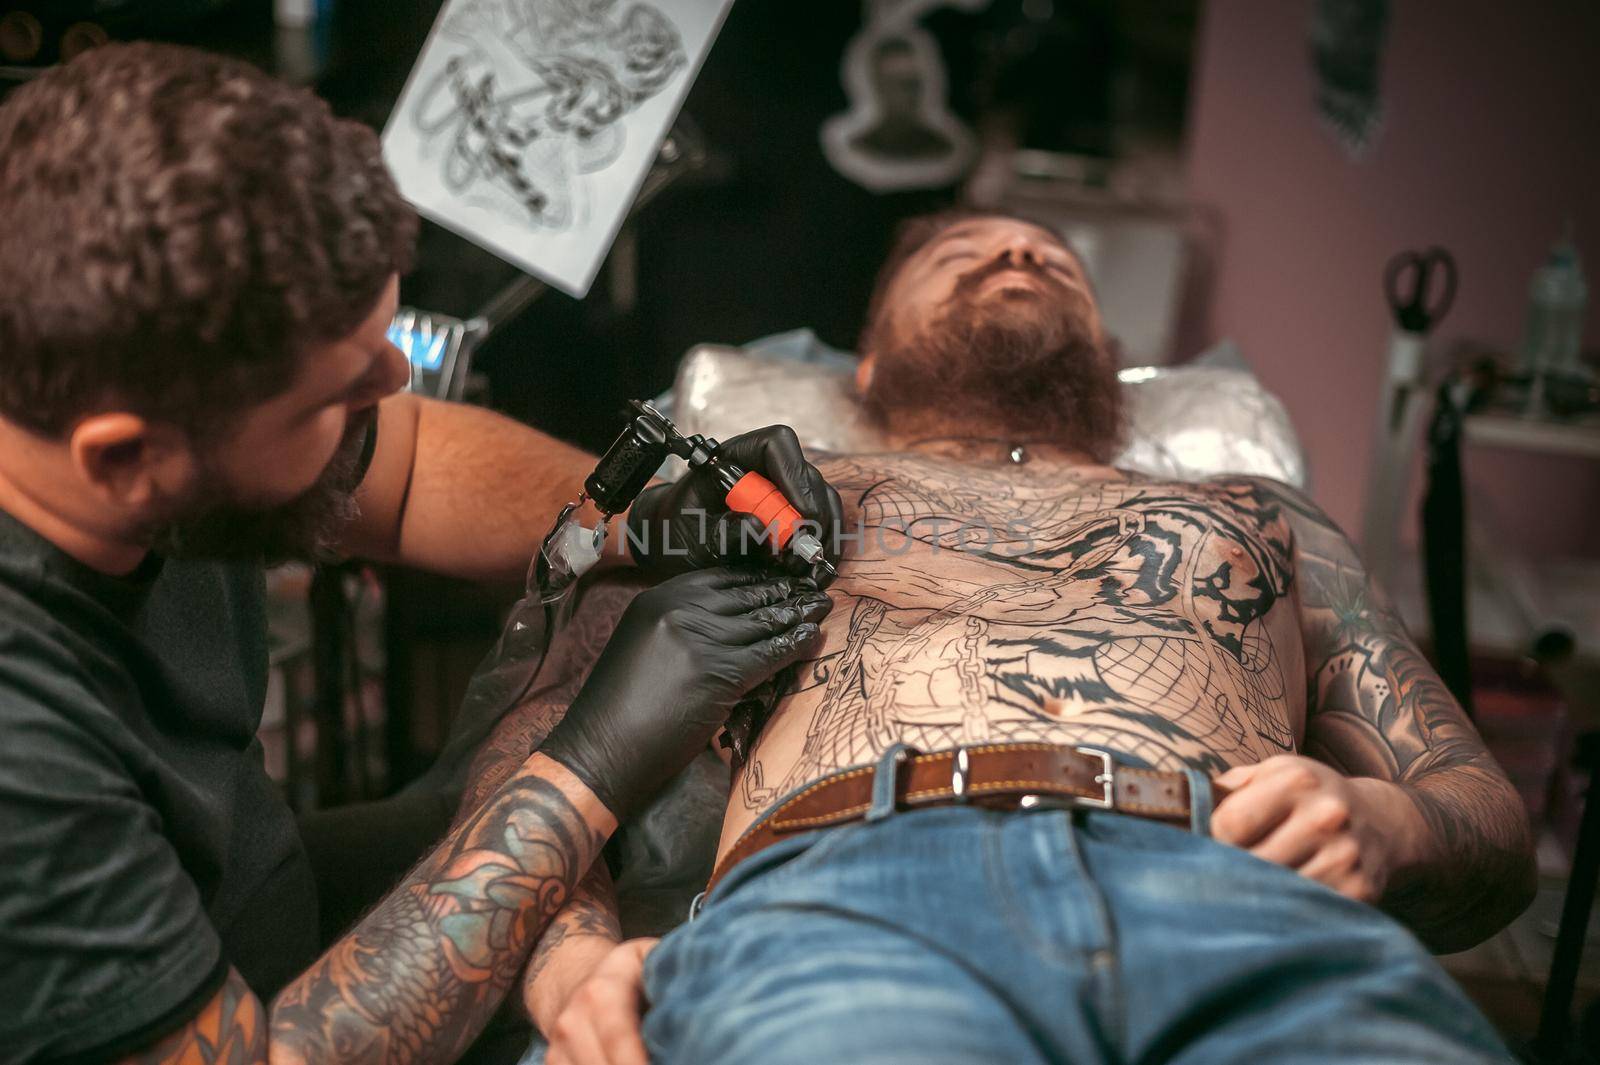 Tattooist doing tattoo picture in tattoo studio by Proff